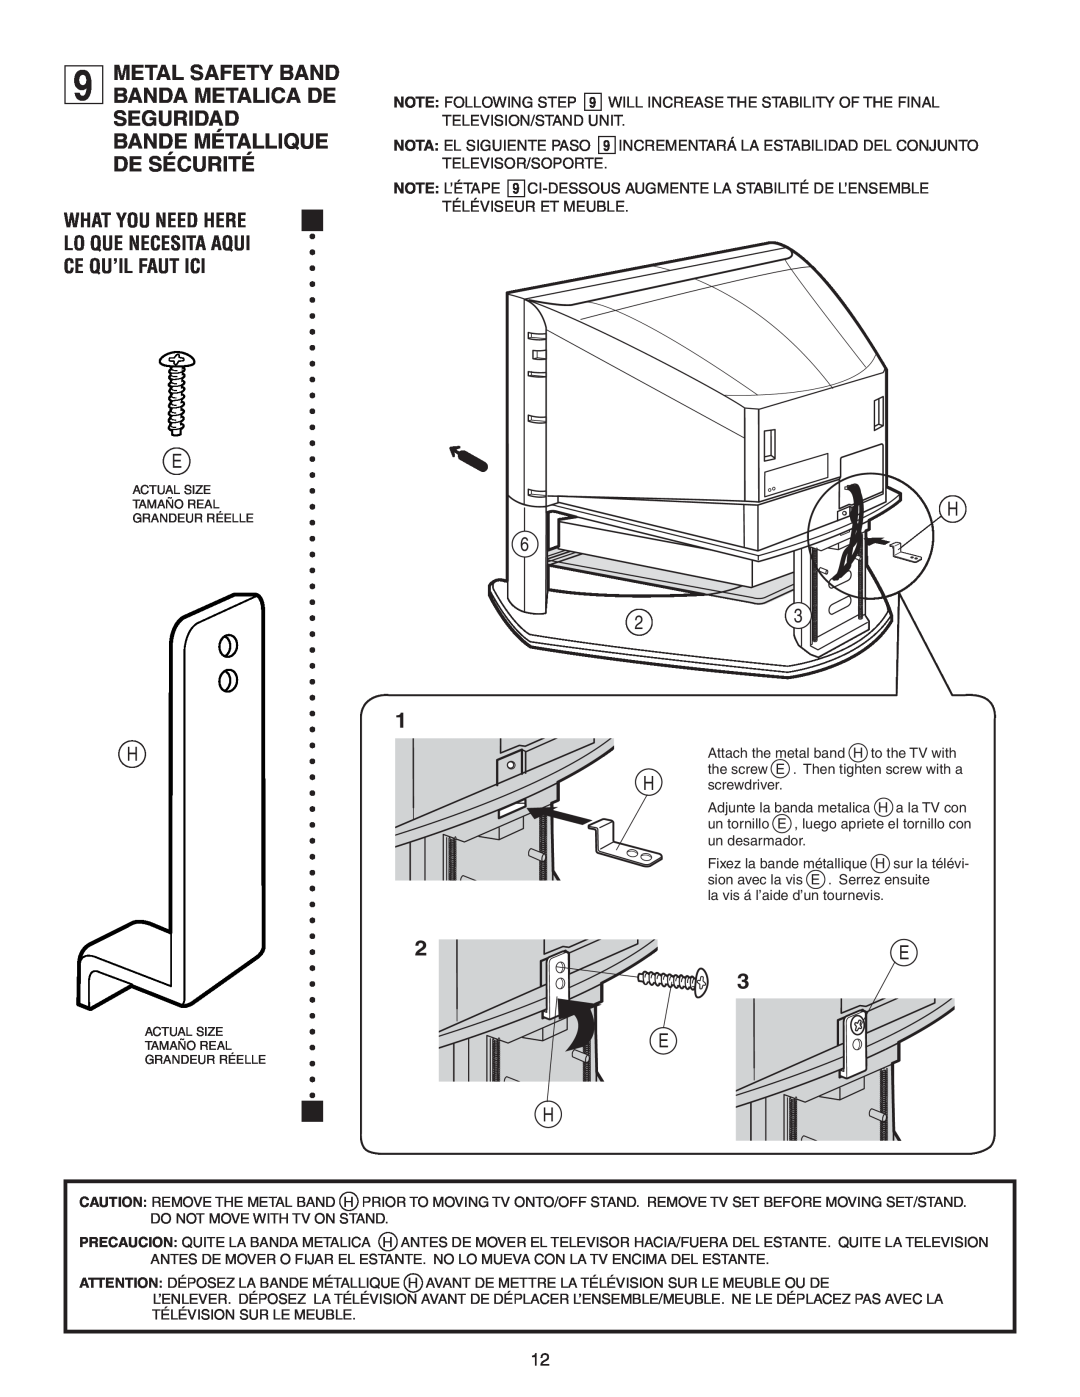 Sony SU-30HX1 manual What You Need Here Lo Que Necesita Aqui Ce Qu’Il Faut Ici, H screwdriver 